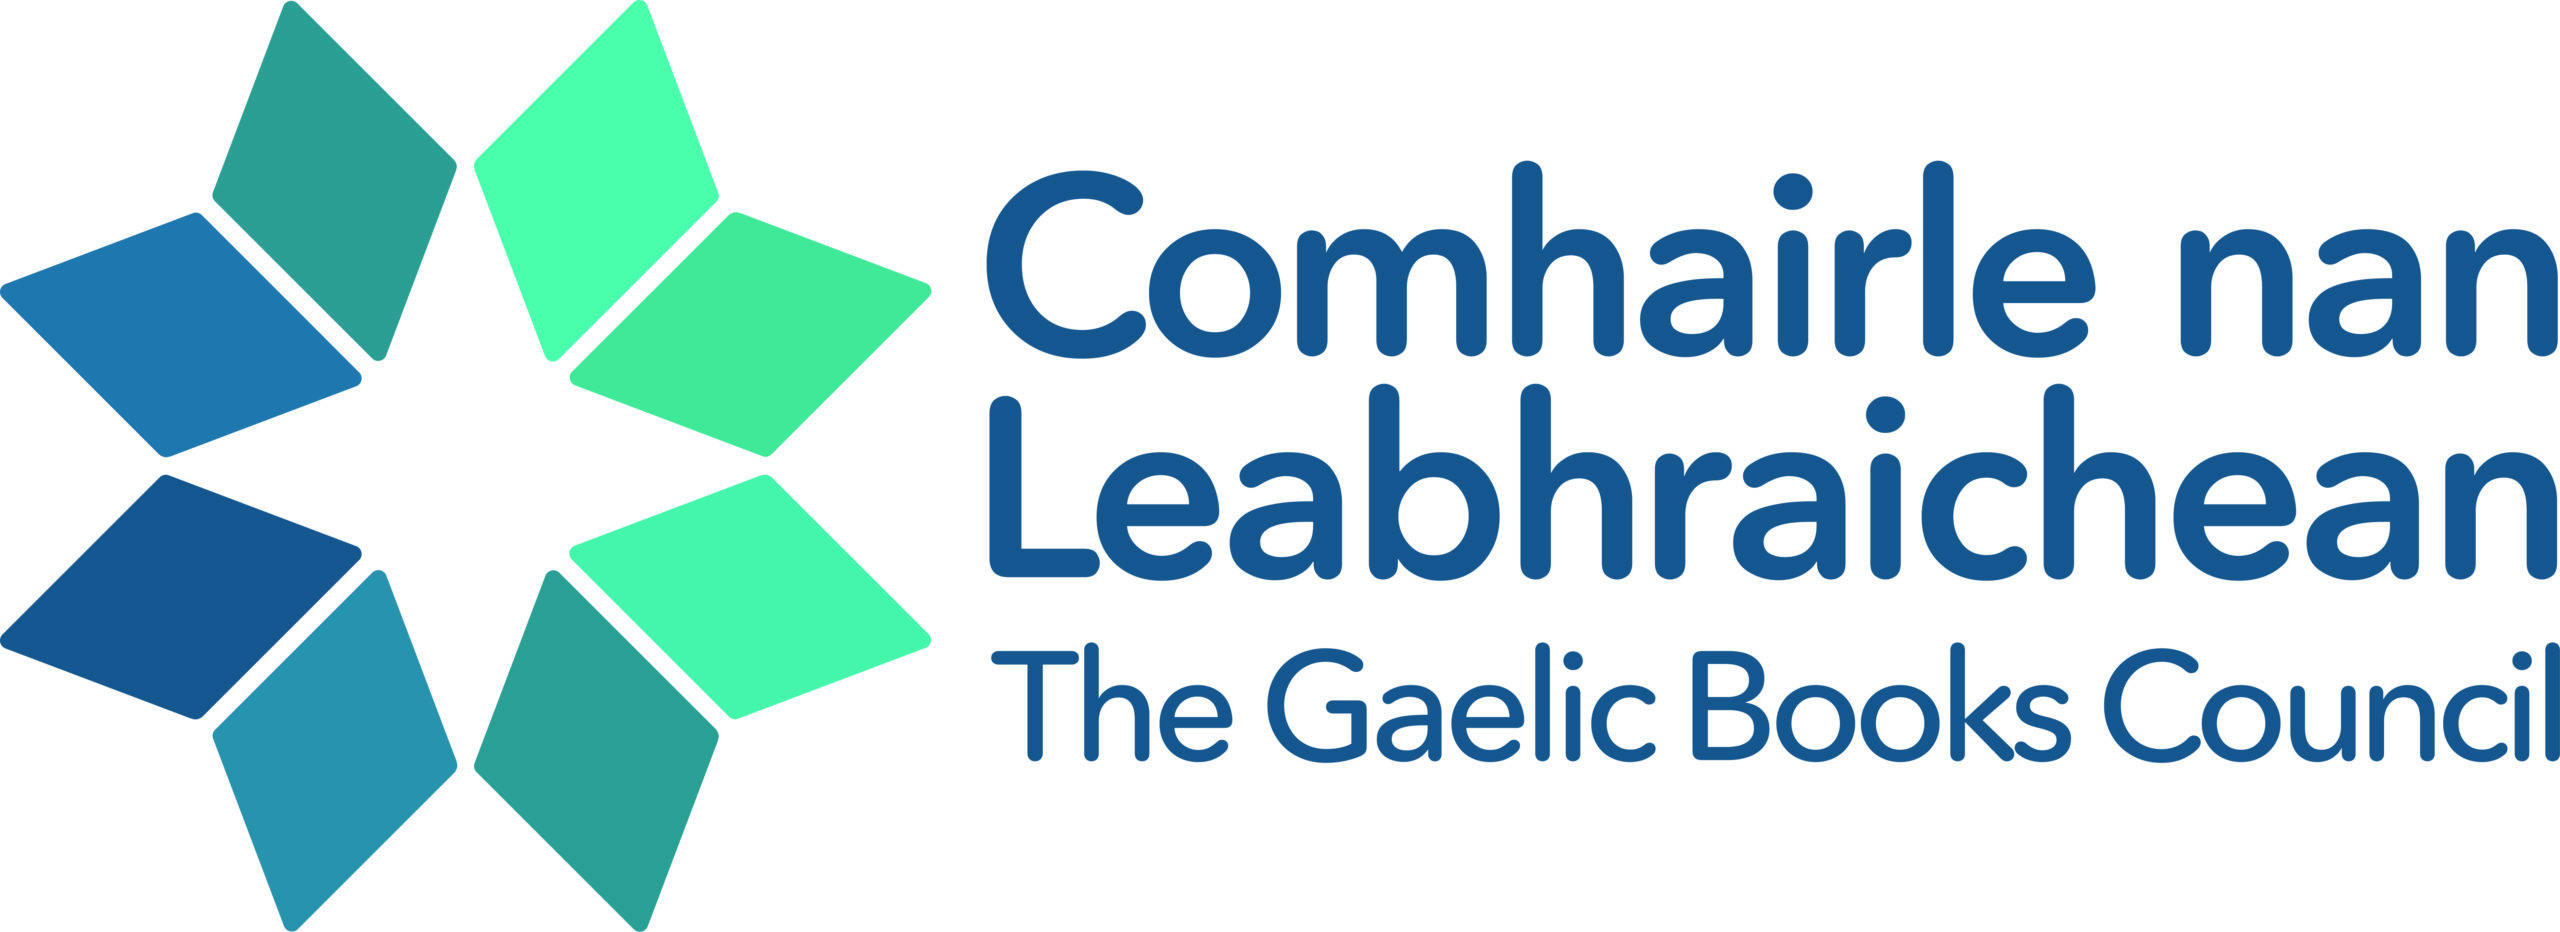 Comhairle Nan Leabhraichean The Gaelic Book Council